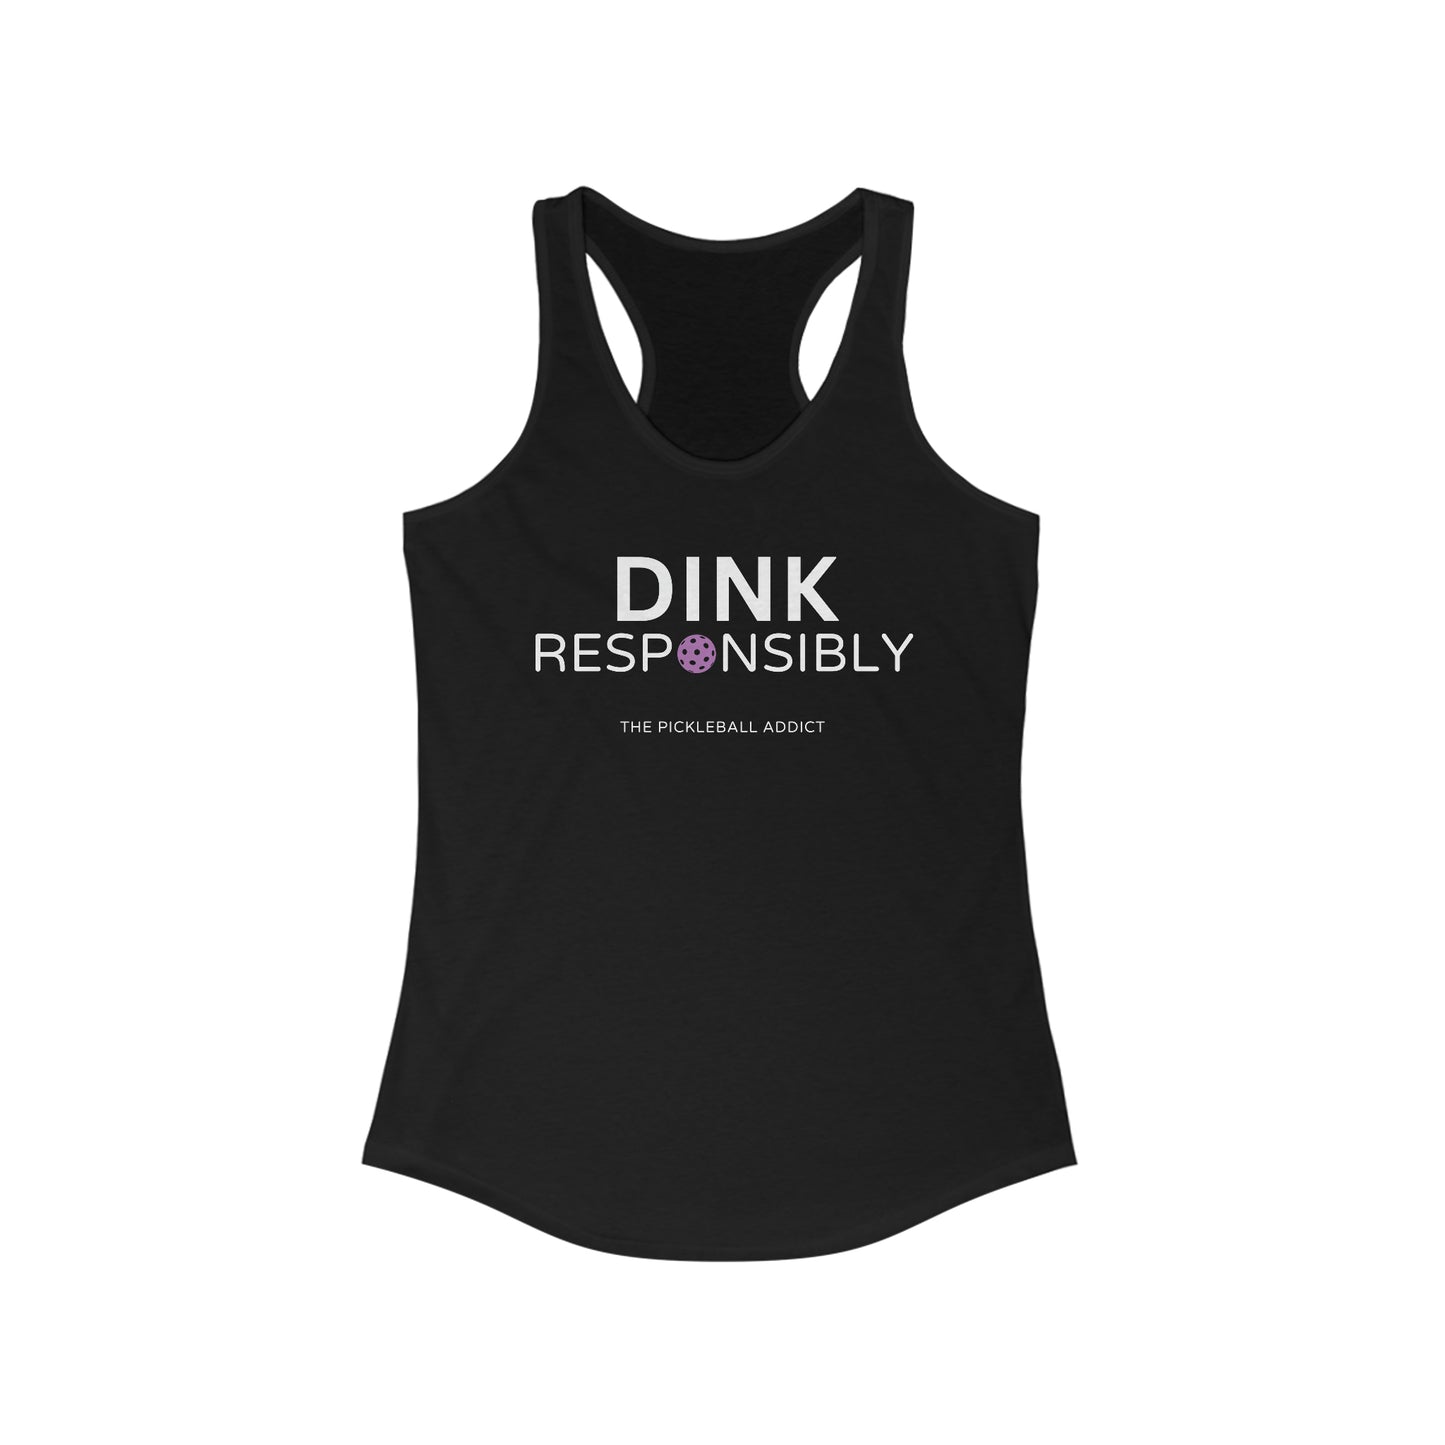 Dink Responsibly - Don't Get Smashed